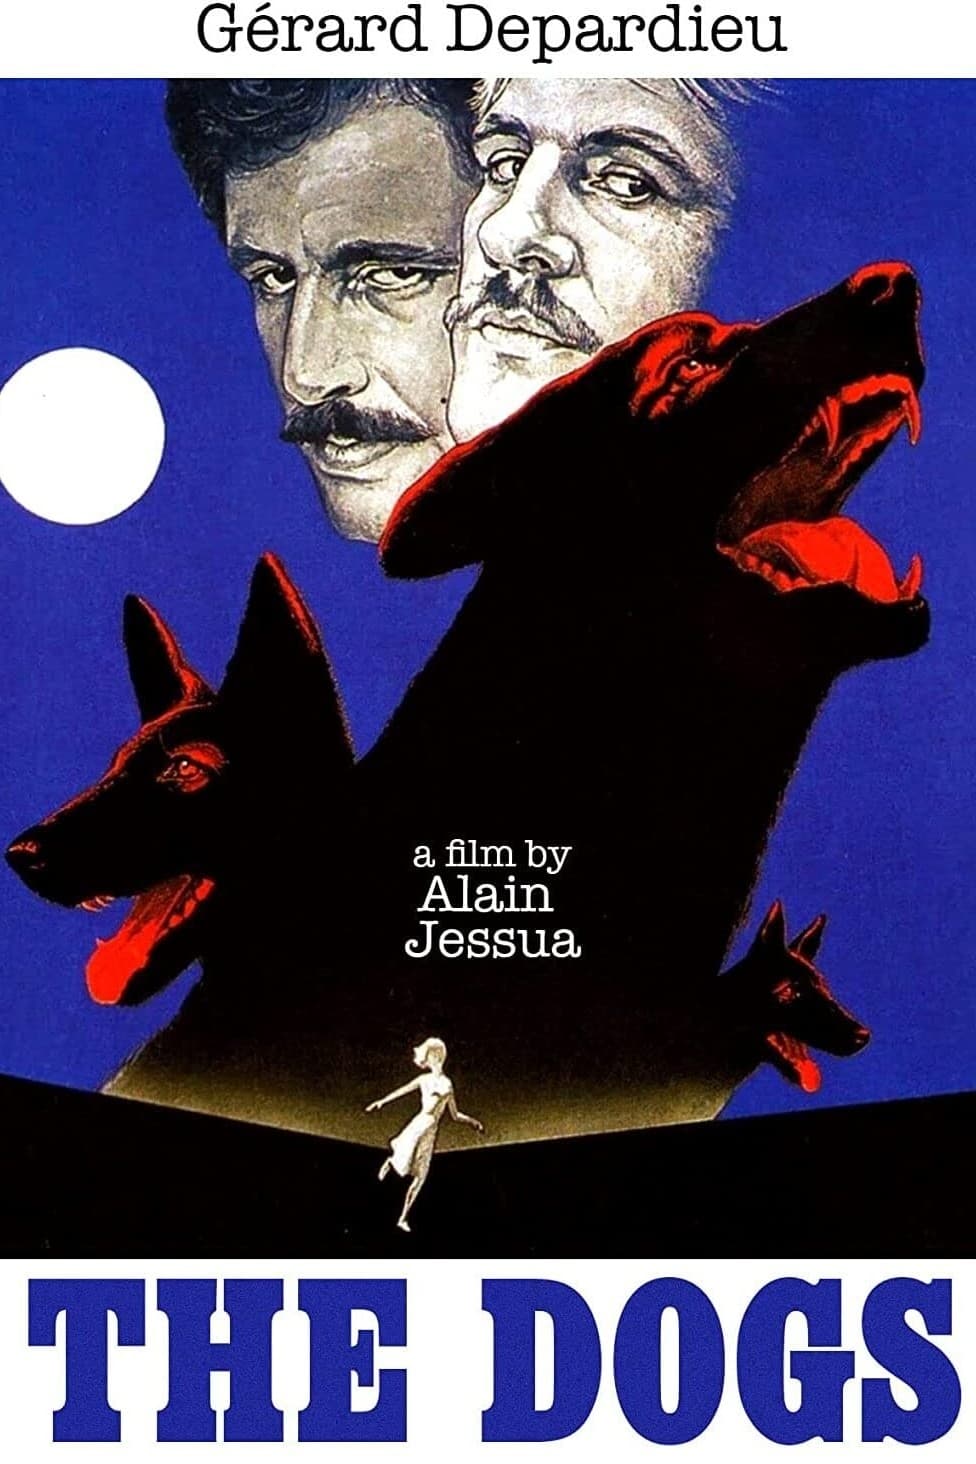 Die Hunde (1979)